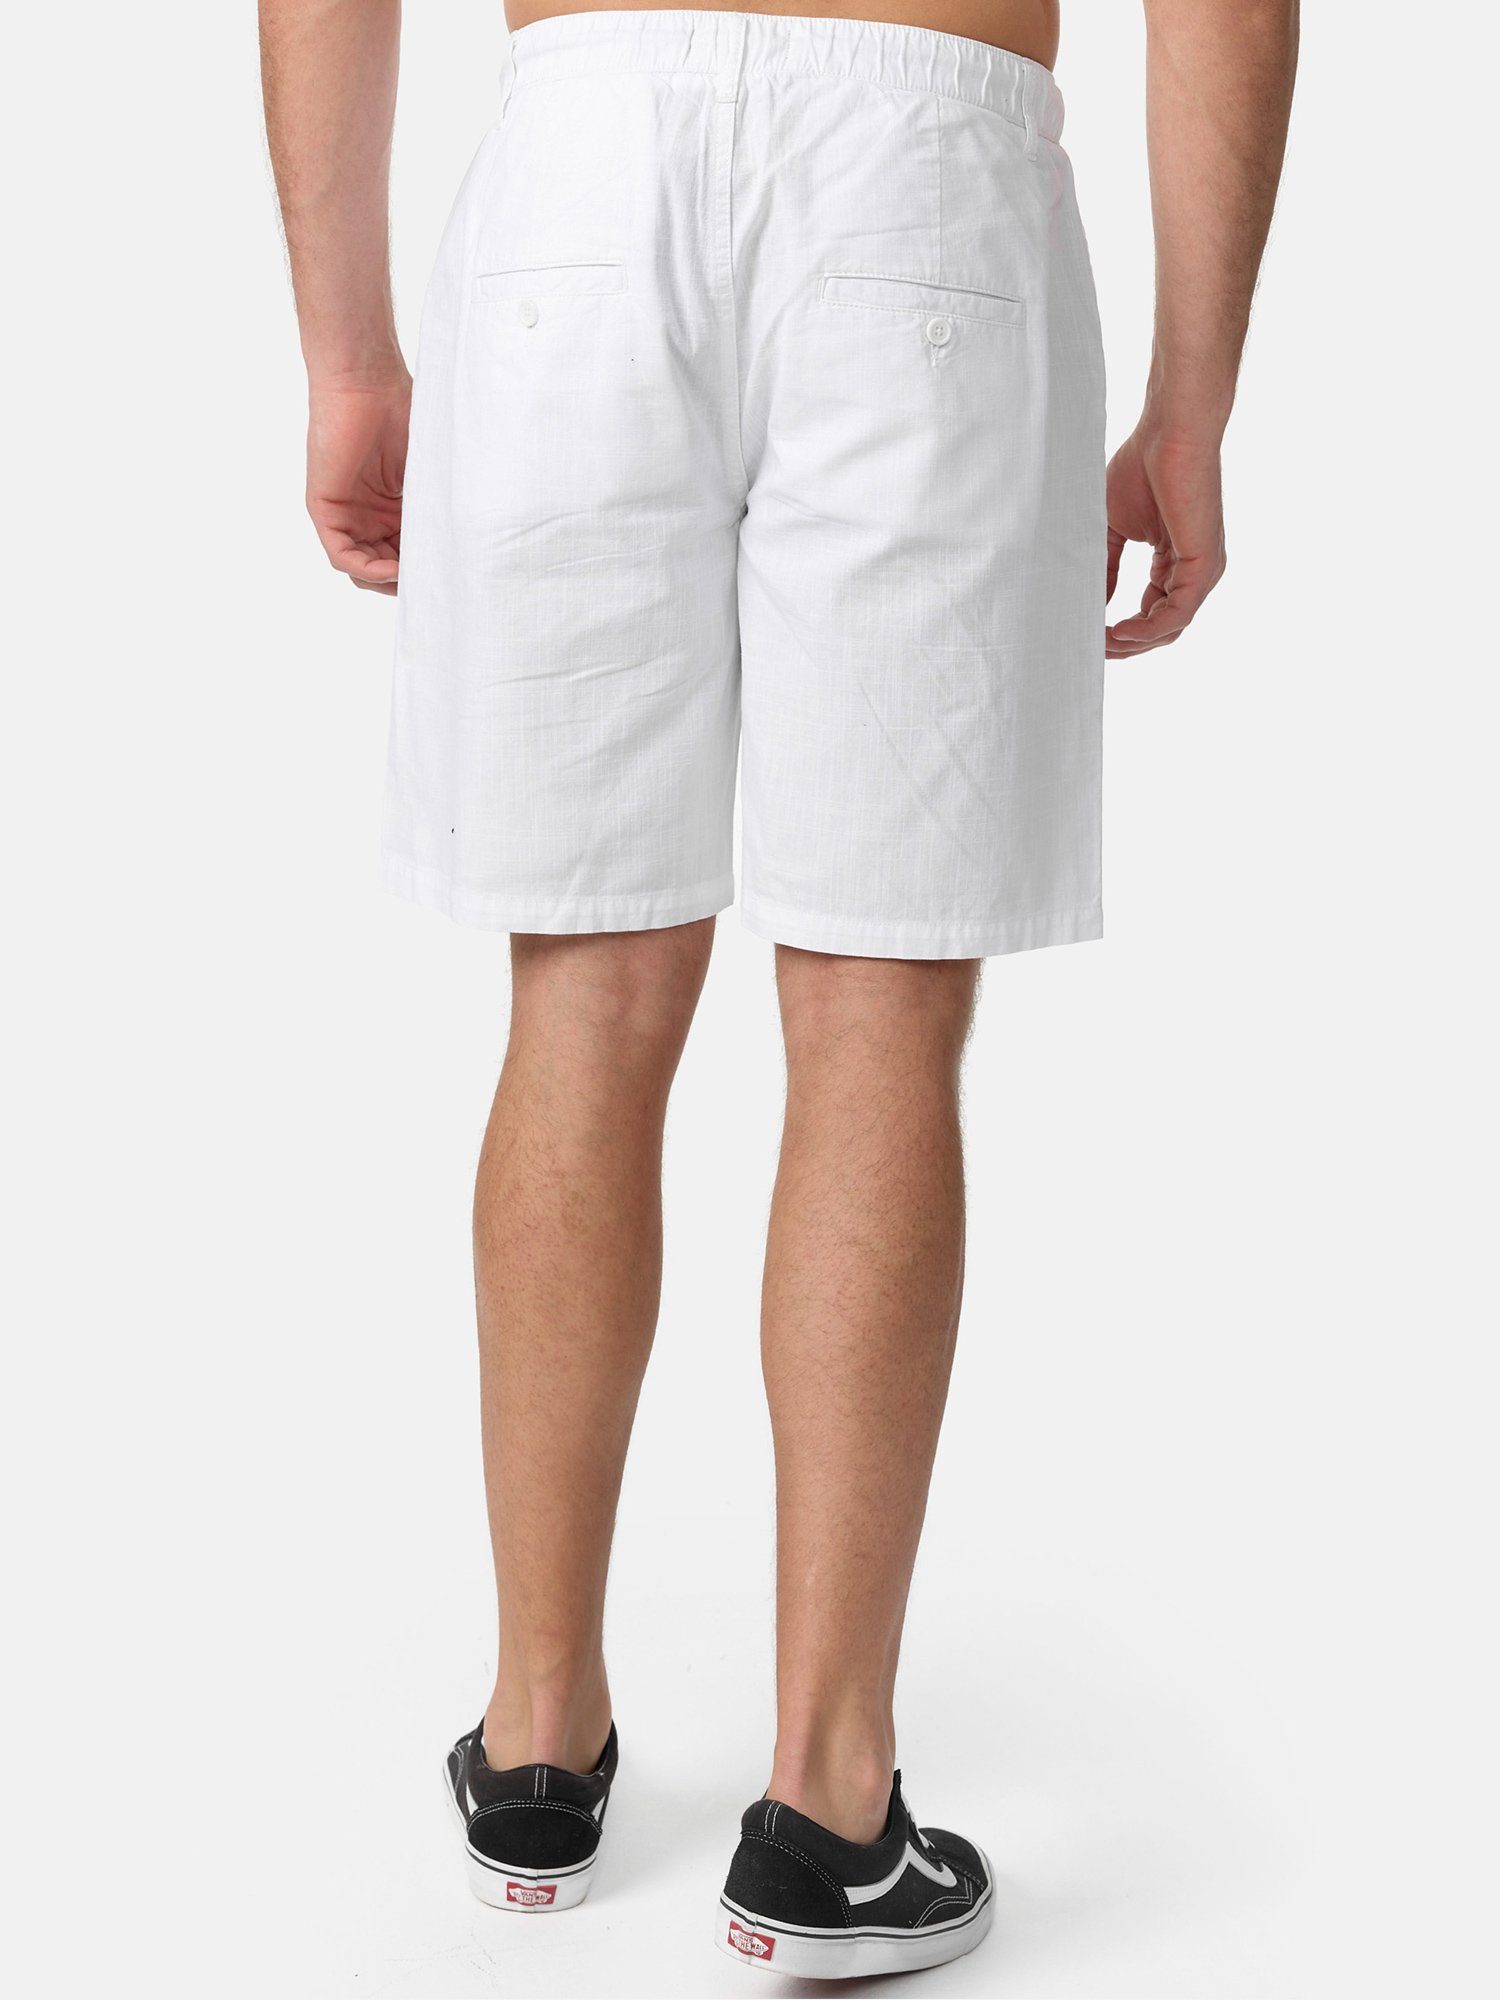 zeitlose moderne in Leinen-Optik Tazzio weiß & A205 Hose kurze Shorts